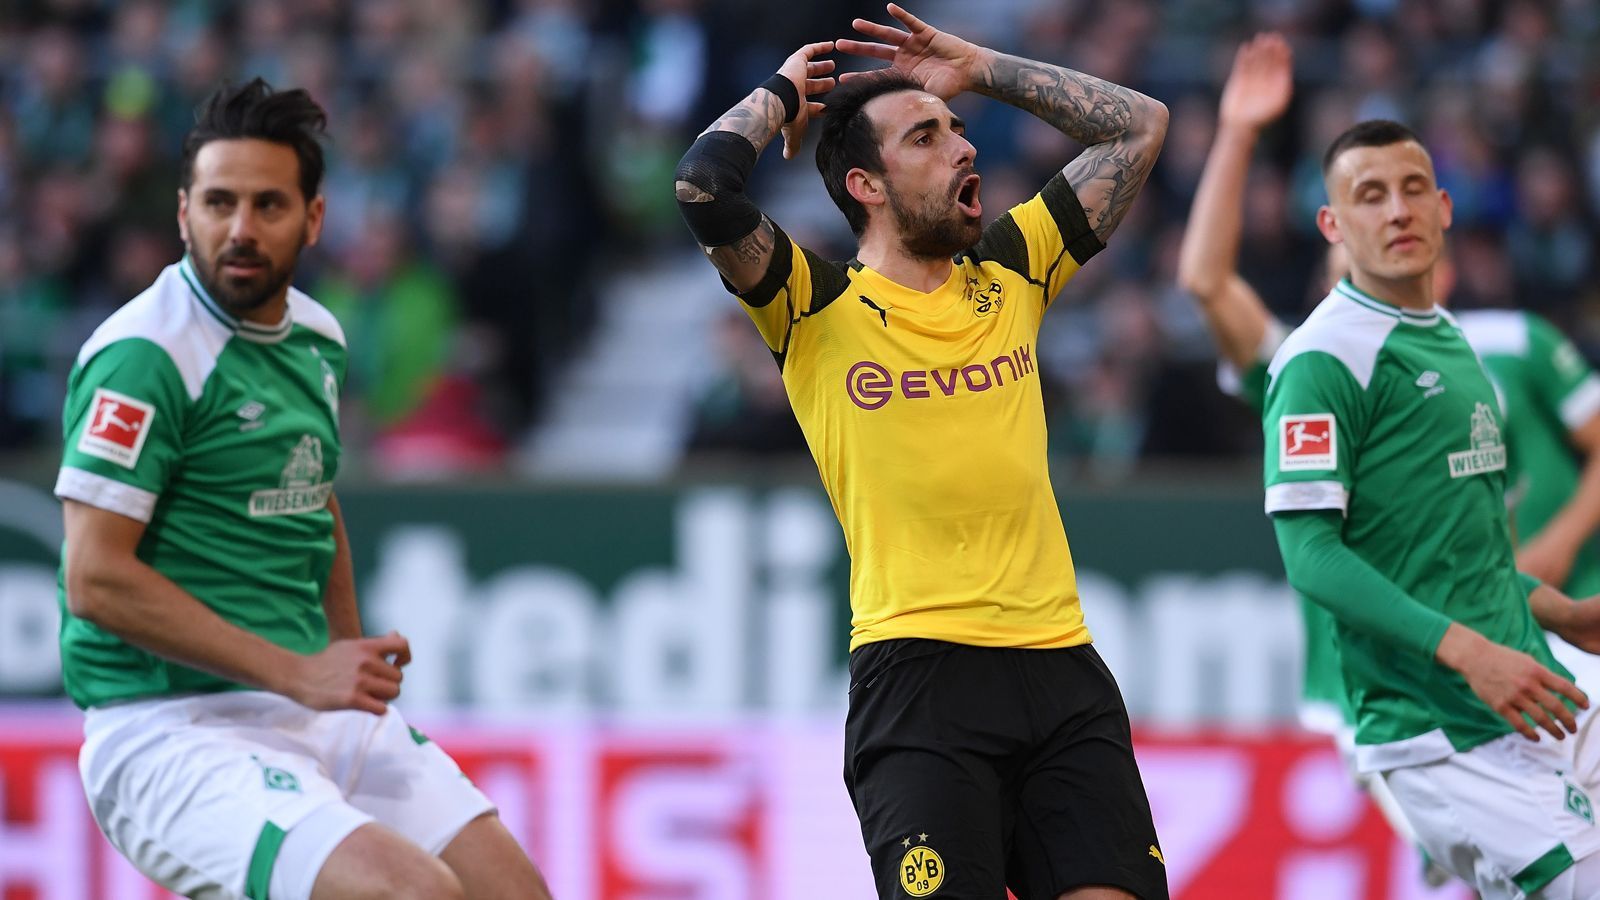 
                <strong>BVB verspielt Sieg gegen Bremen</strong><br>
                Borussia Dortmund hat mit einem 2:2 in Bremen wahrscheinlich für eine Vorentscheidung im Kampf um die Meisterschaft gesorgt. Die Favre-Elf brachte nach starken 60 Minuten eine 2:0-Führung nicht über Zeit. Dabei flog vor allem die zunächst sehr kompakte Defensive plötzlich auseinander. Die BVB-Stars in der Einzelkritik.
              